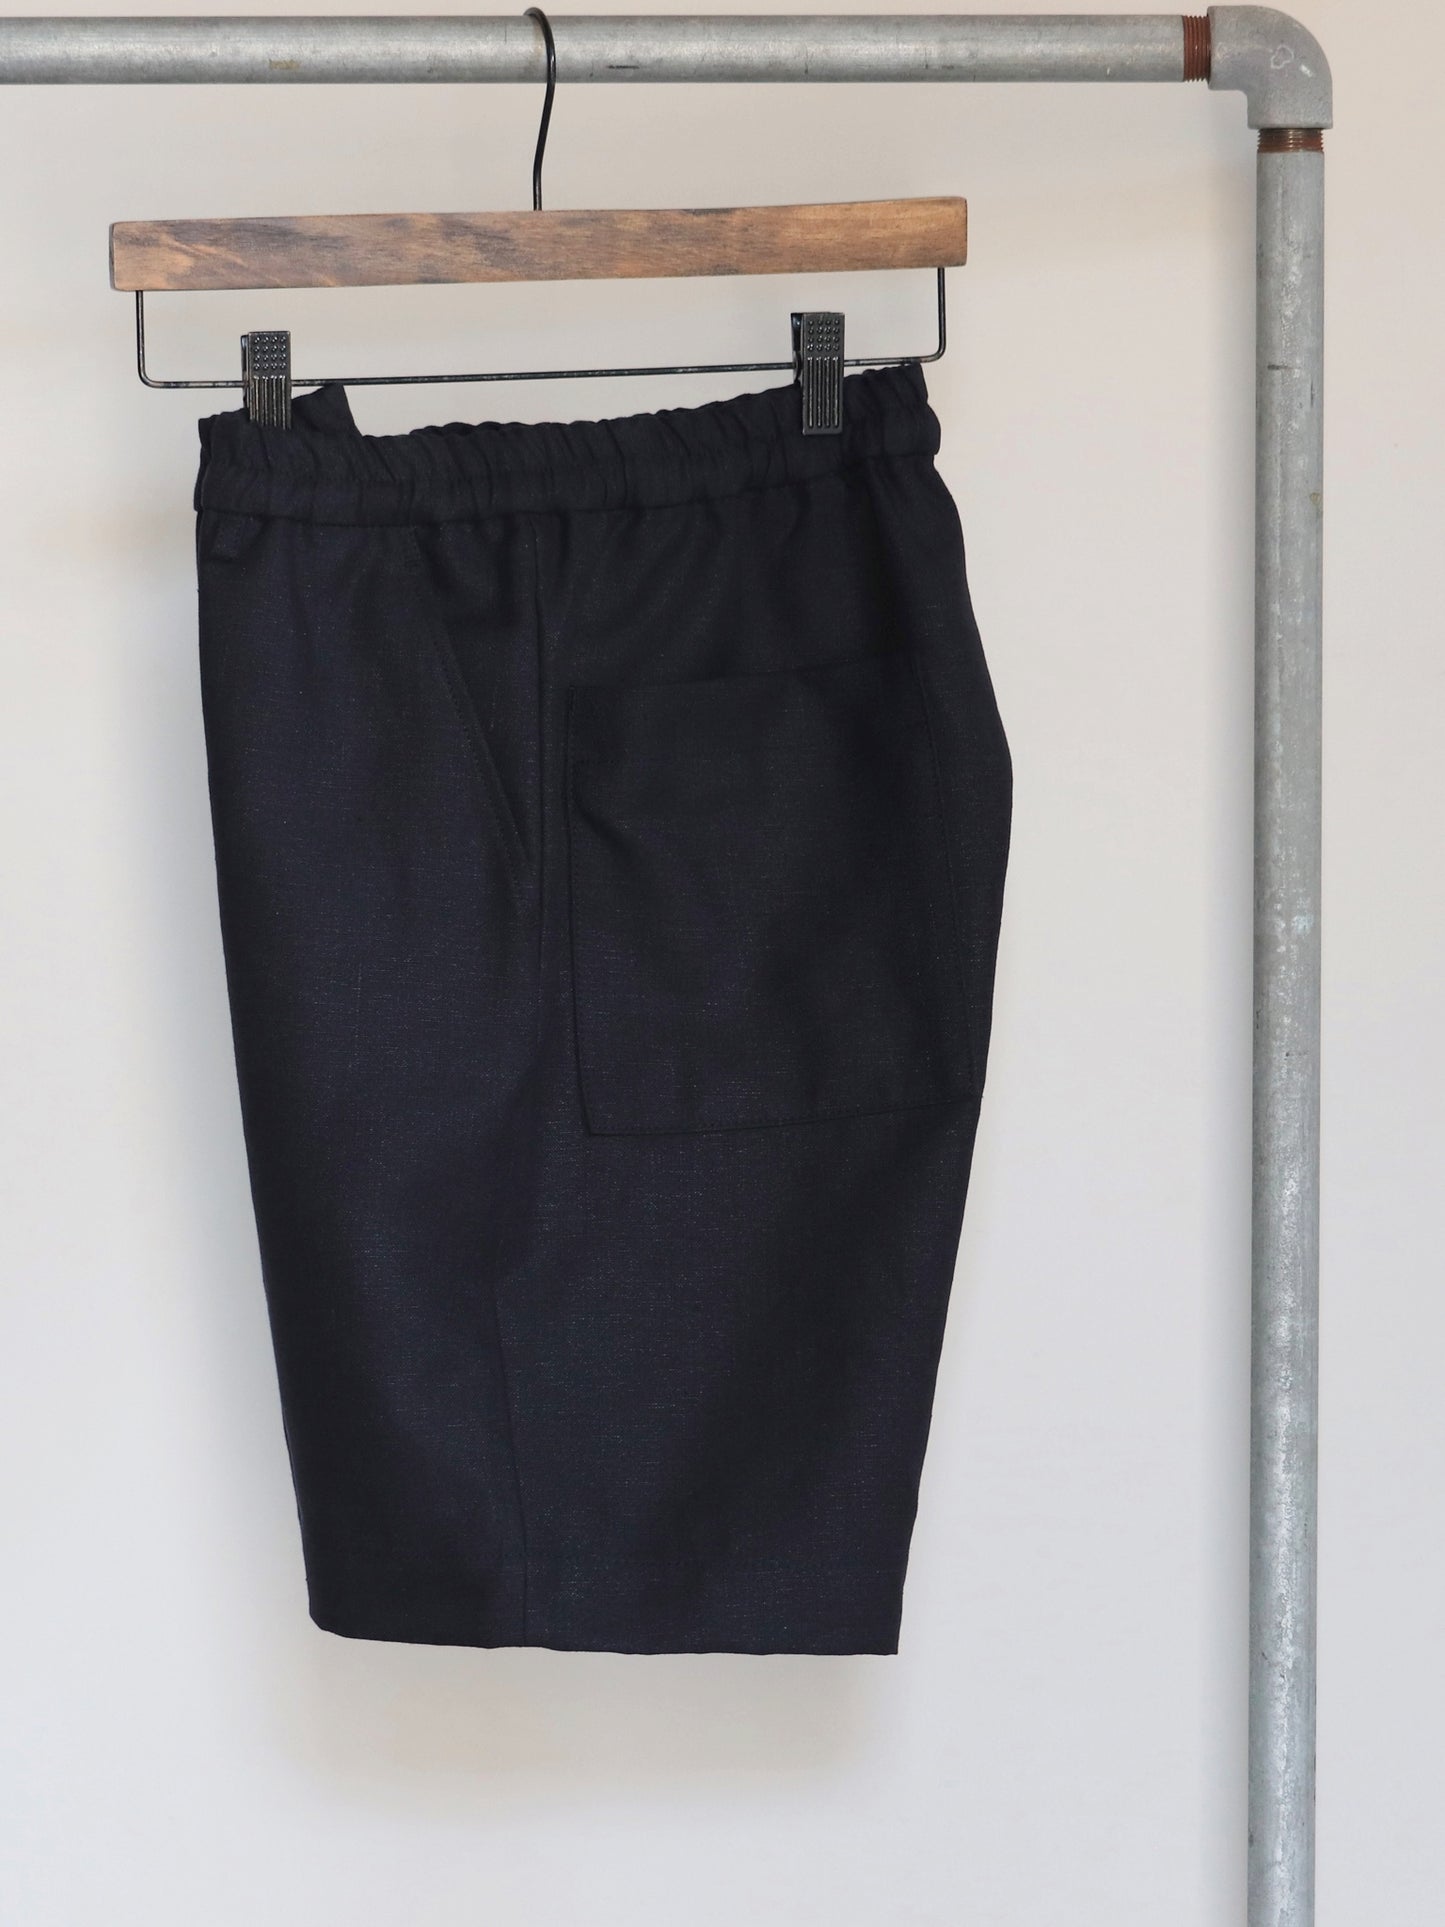 egretique-plain-linen-shorts-2